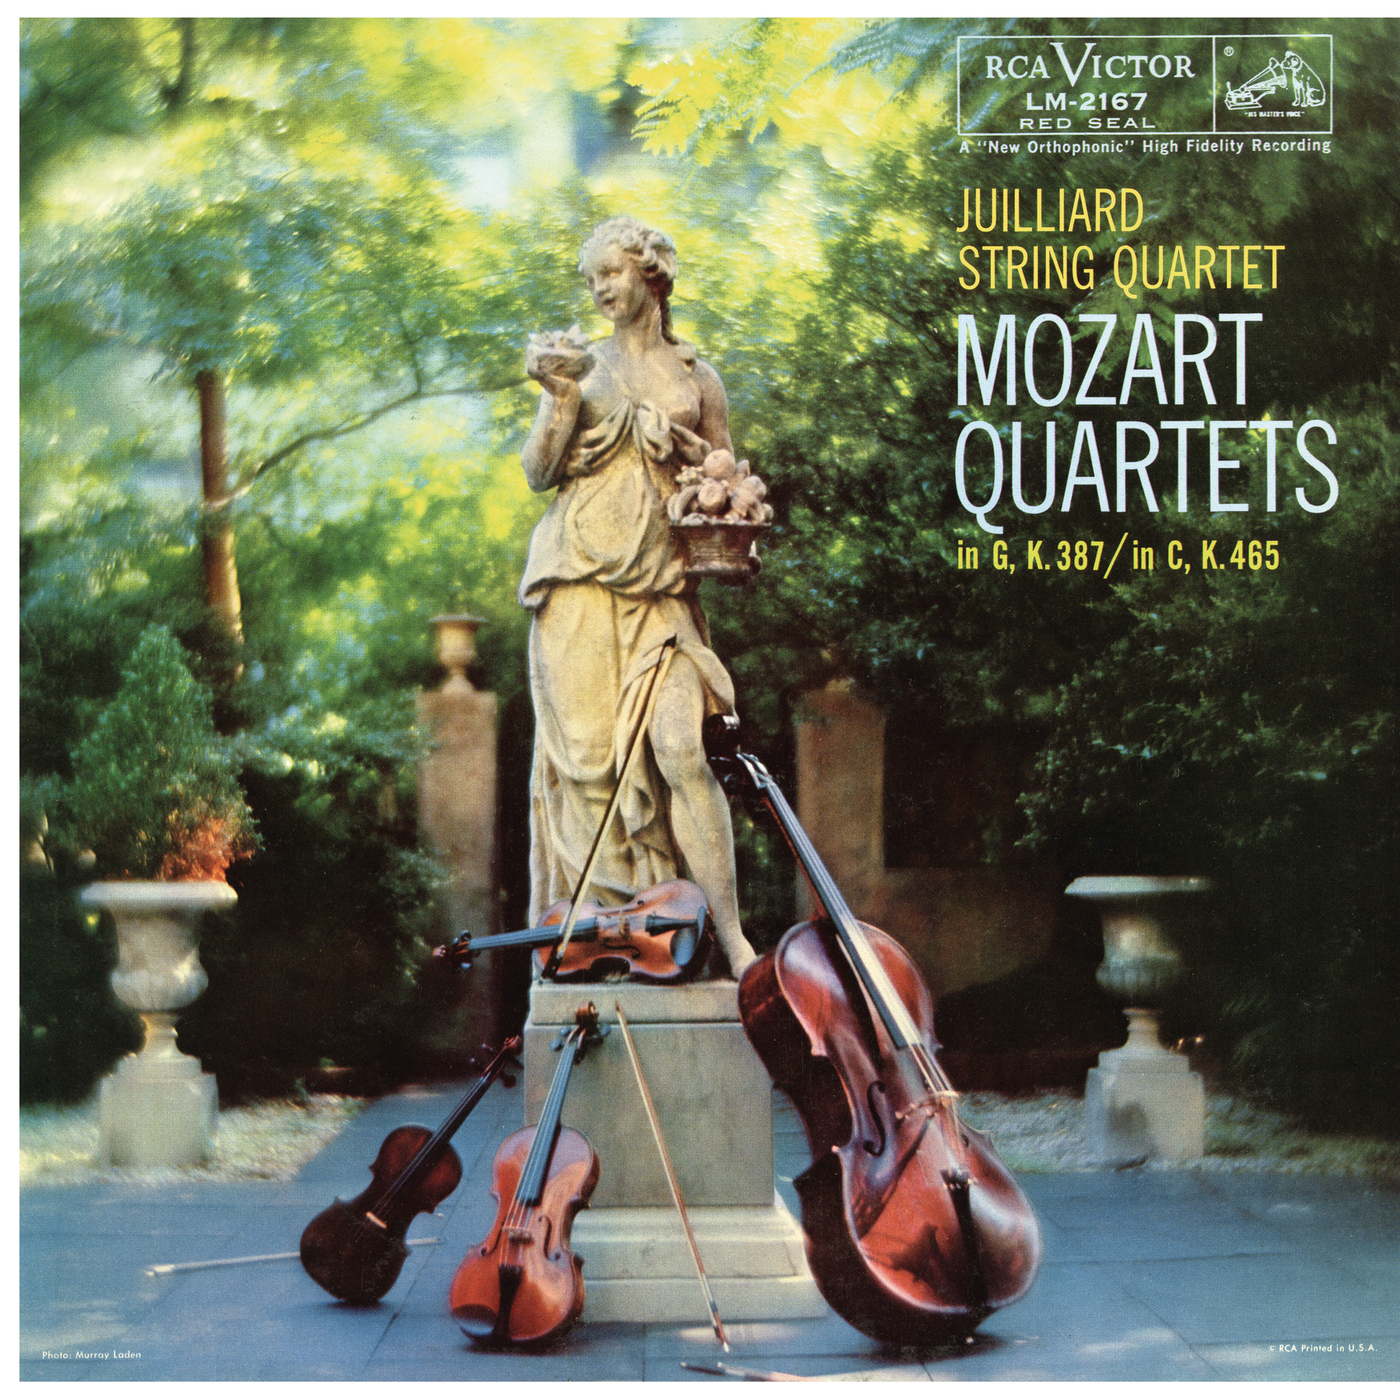 Mozart: String Quartet No. 14 in G Major, K. 387 "Spring" & String Quartet No. 19 in C Major, K. 465 "Dissonant"E (Remastered)